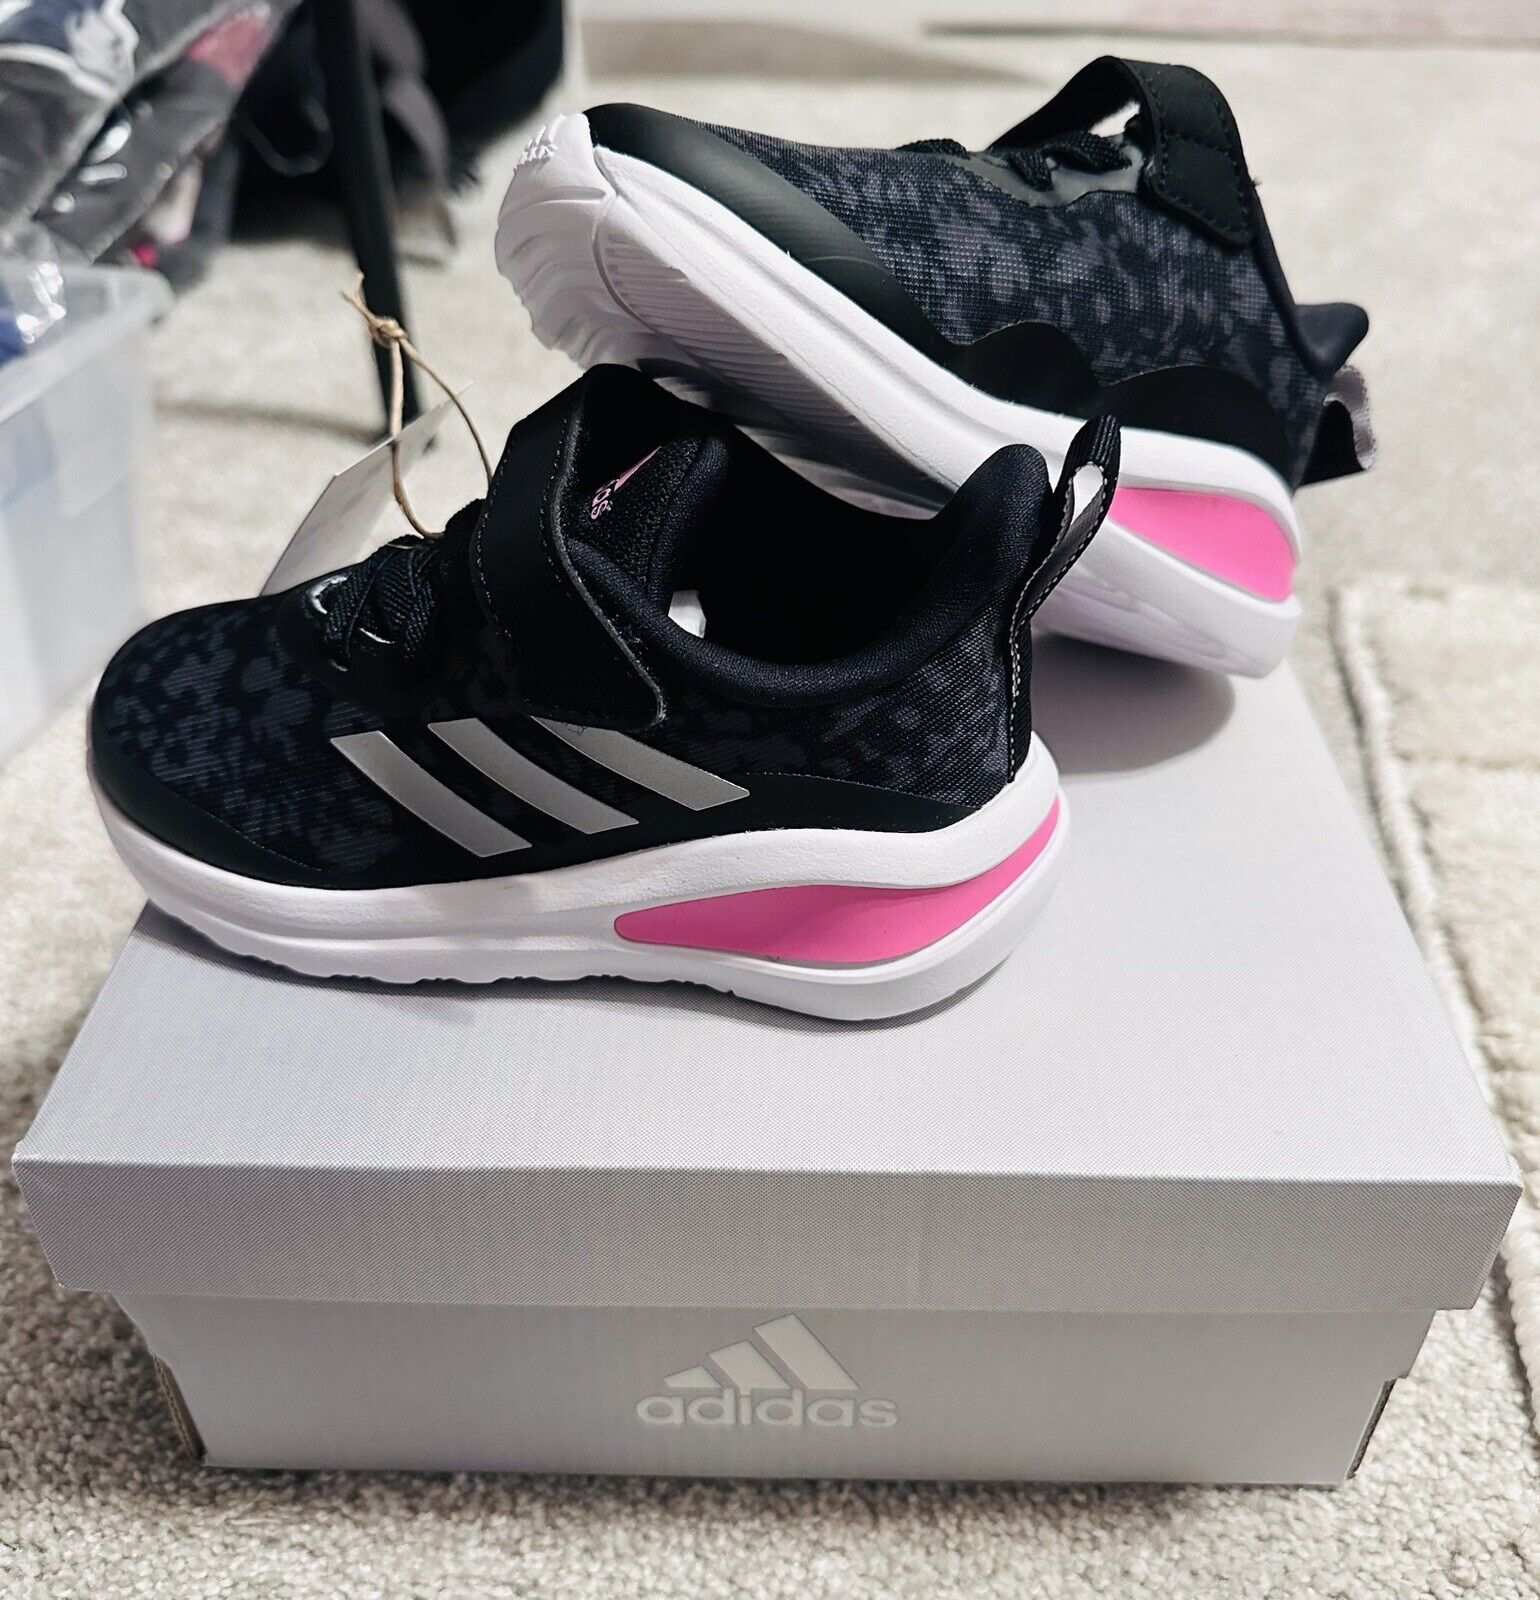 Adidas Fortarun Kids HR0222 Black Pink White US 7K Adidas adidas FortaRun